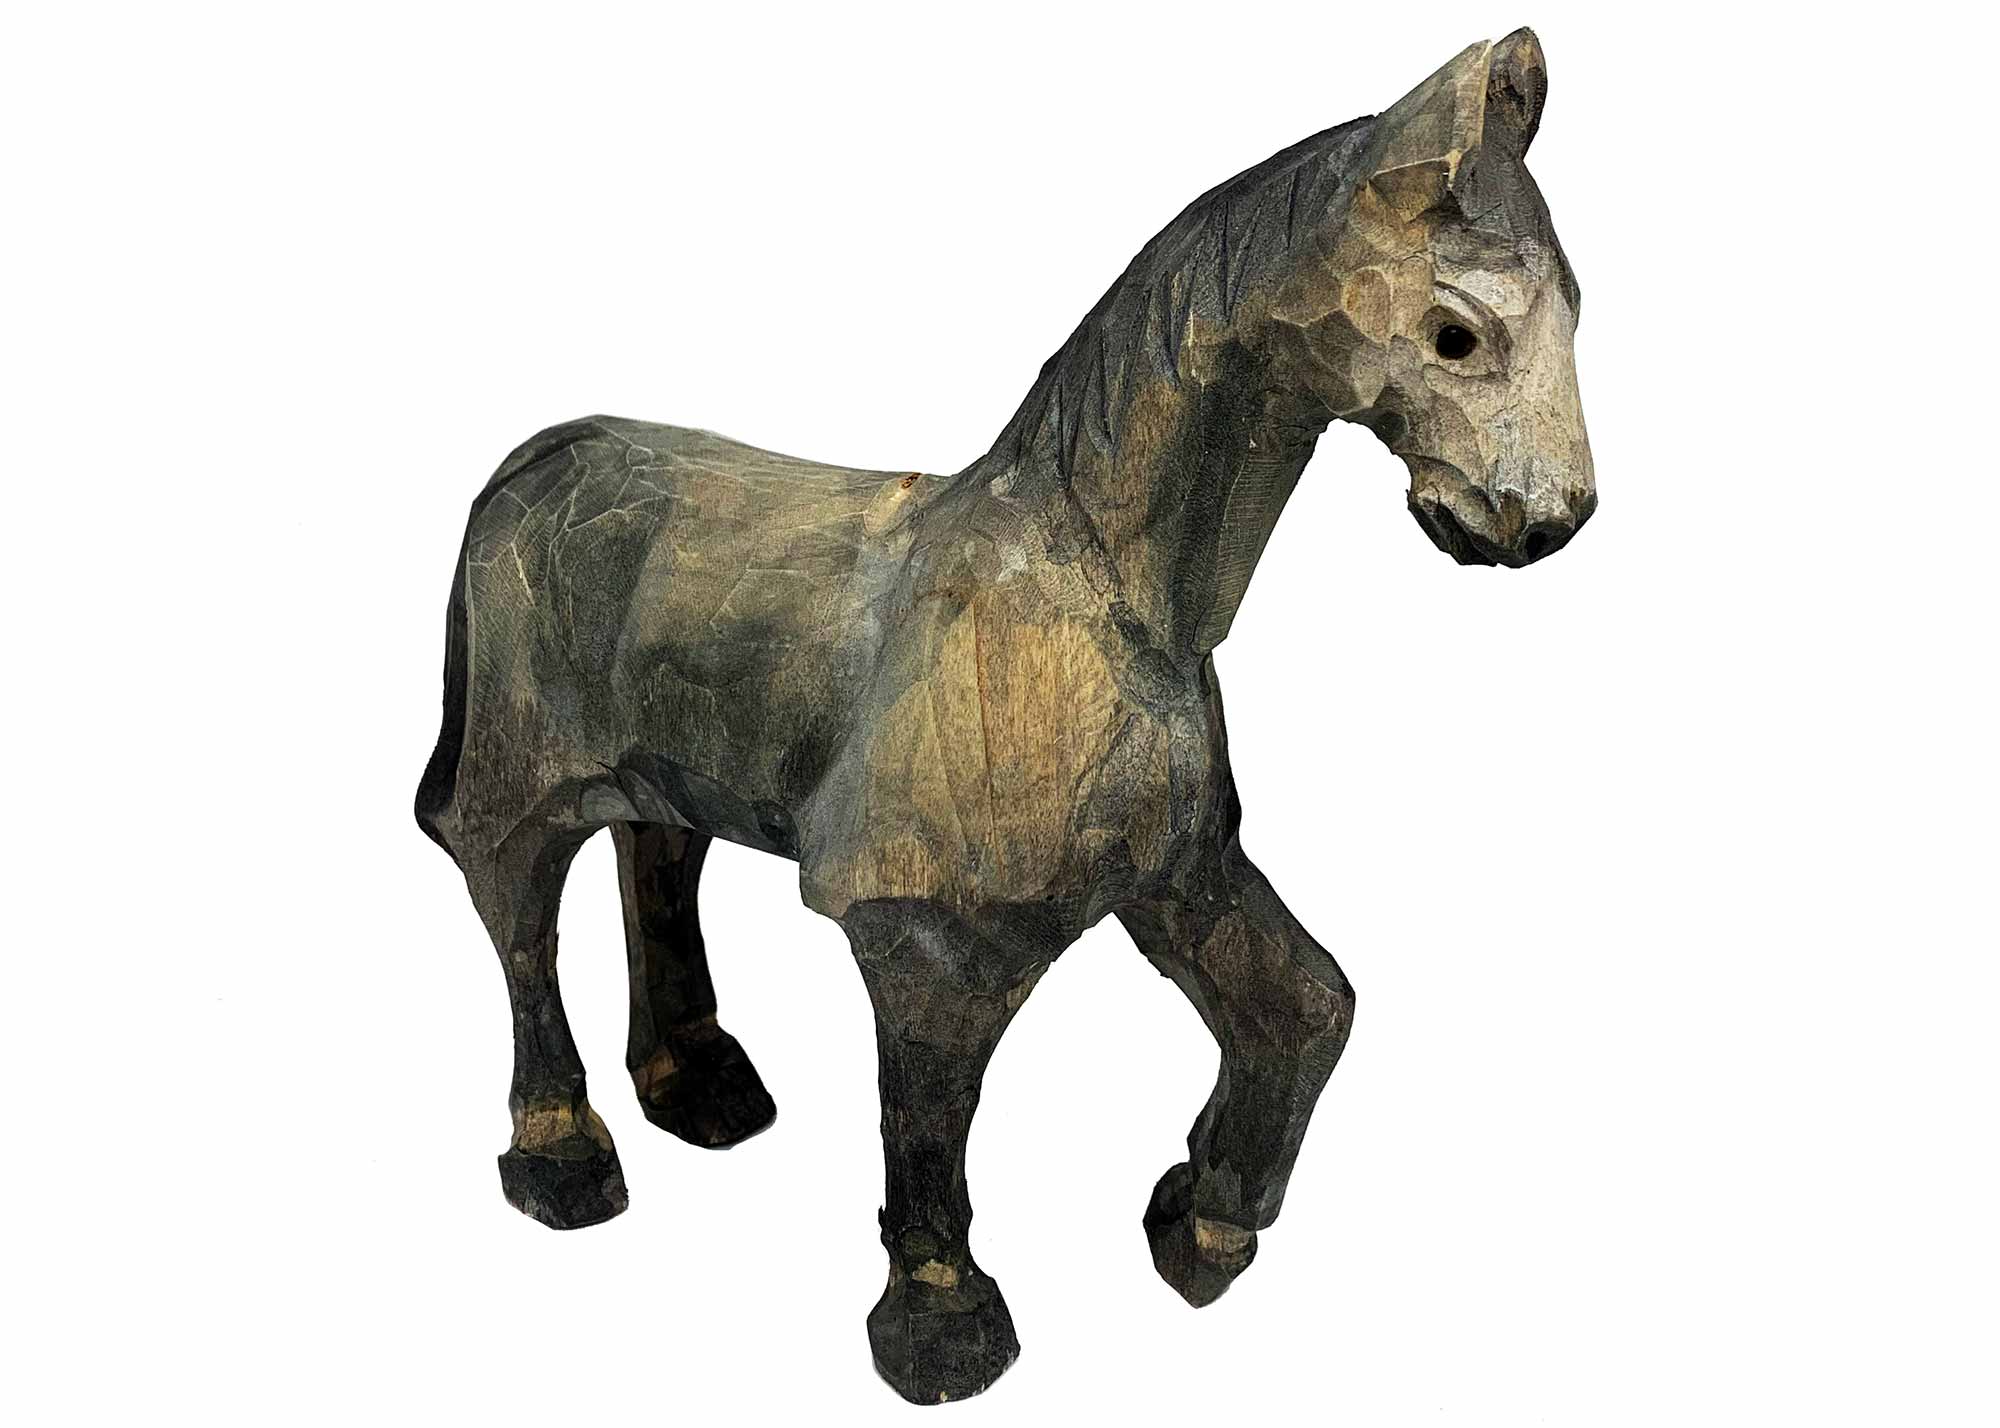 Buy Carved Horse Figurine - Grey at GoldenCockerel.com